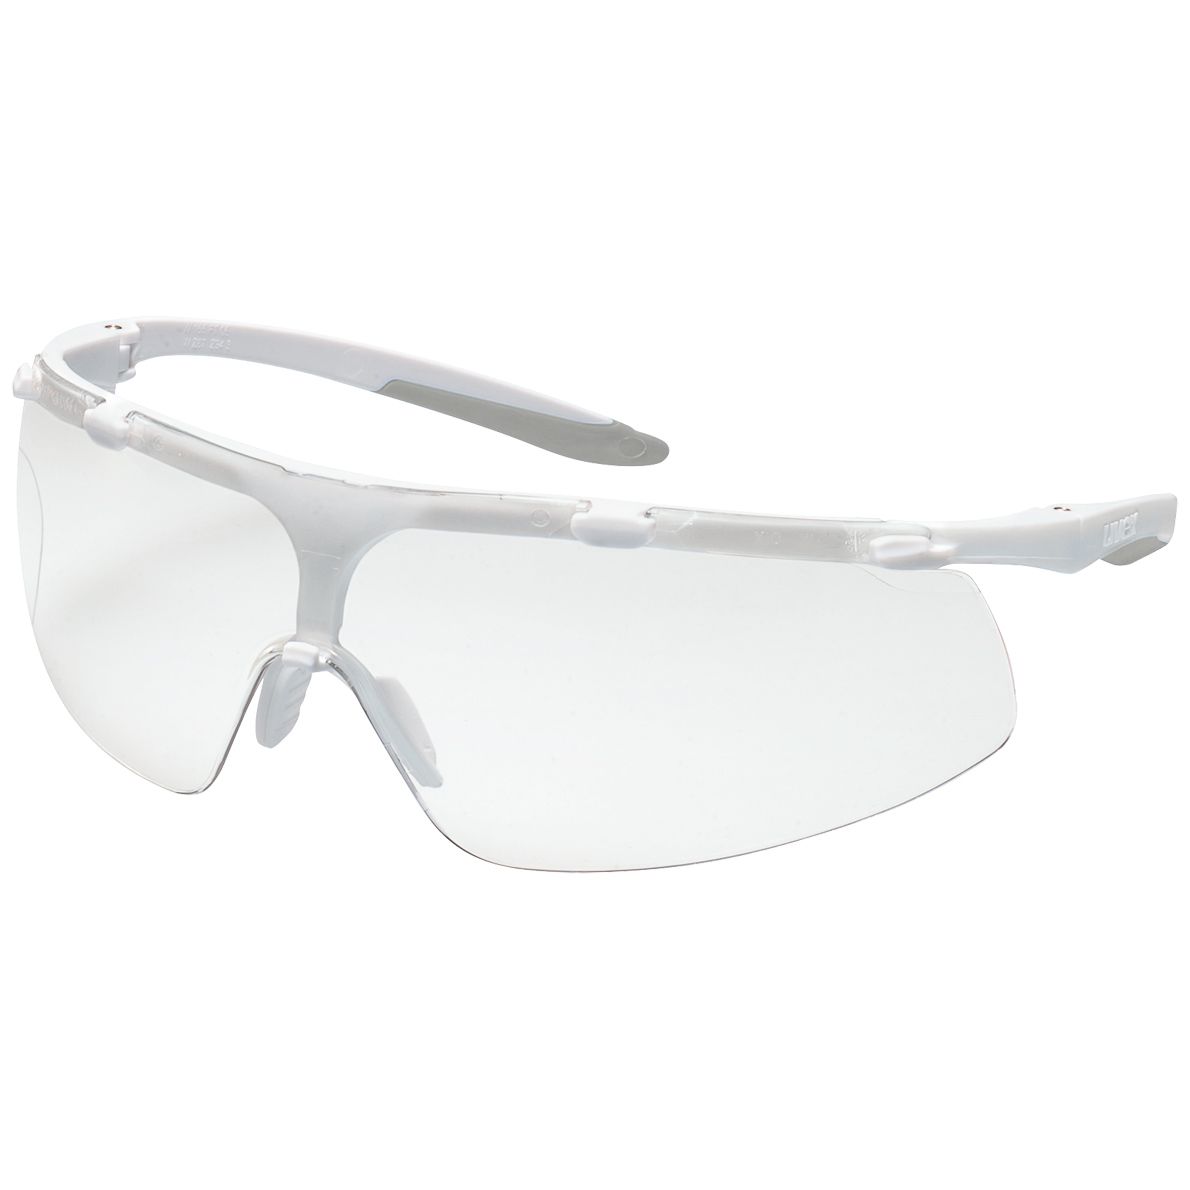 uvex super fit 9178 Schutzbrille - beidseitig dauerhaft beschlagfest dank ETC-Beschichtung - EN 166/170 - Weiß-Grau/Klar